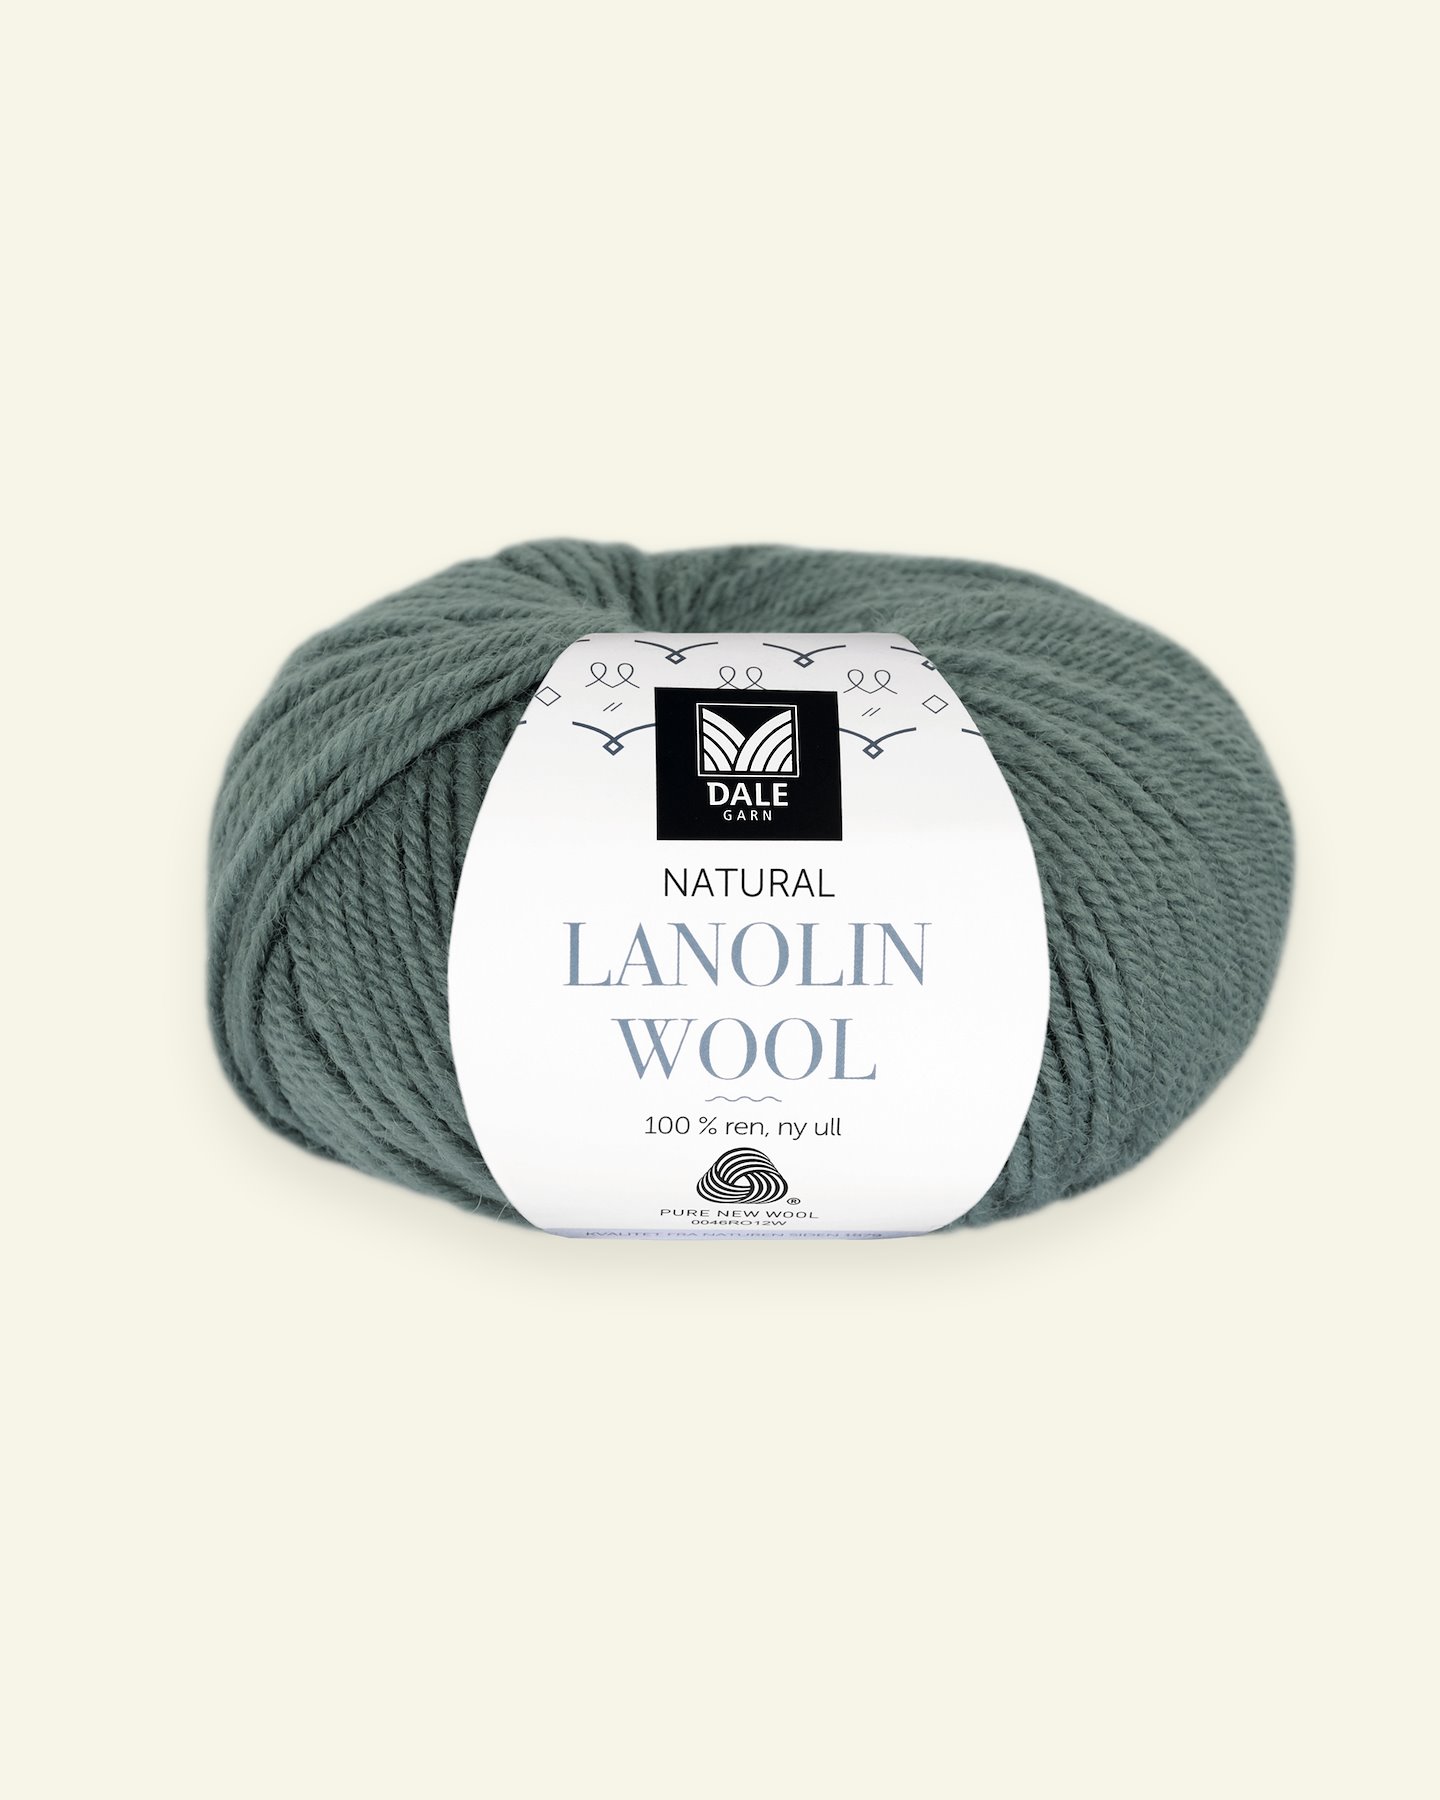 Dale Garn, 100% wool yarn "Lanolin Wool", eucalyptus 90000287_pack